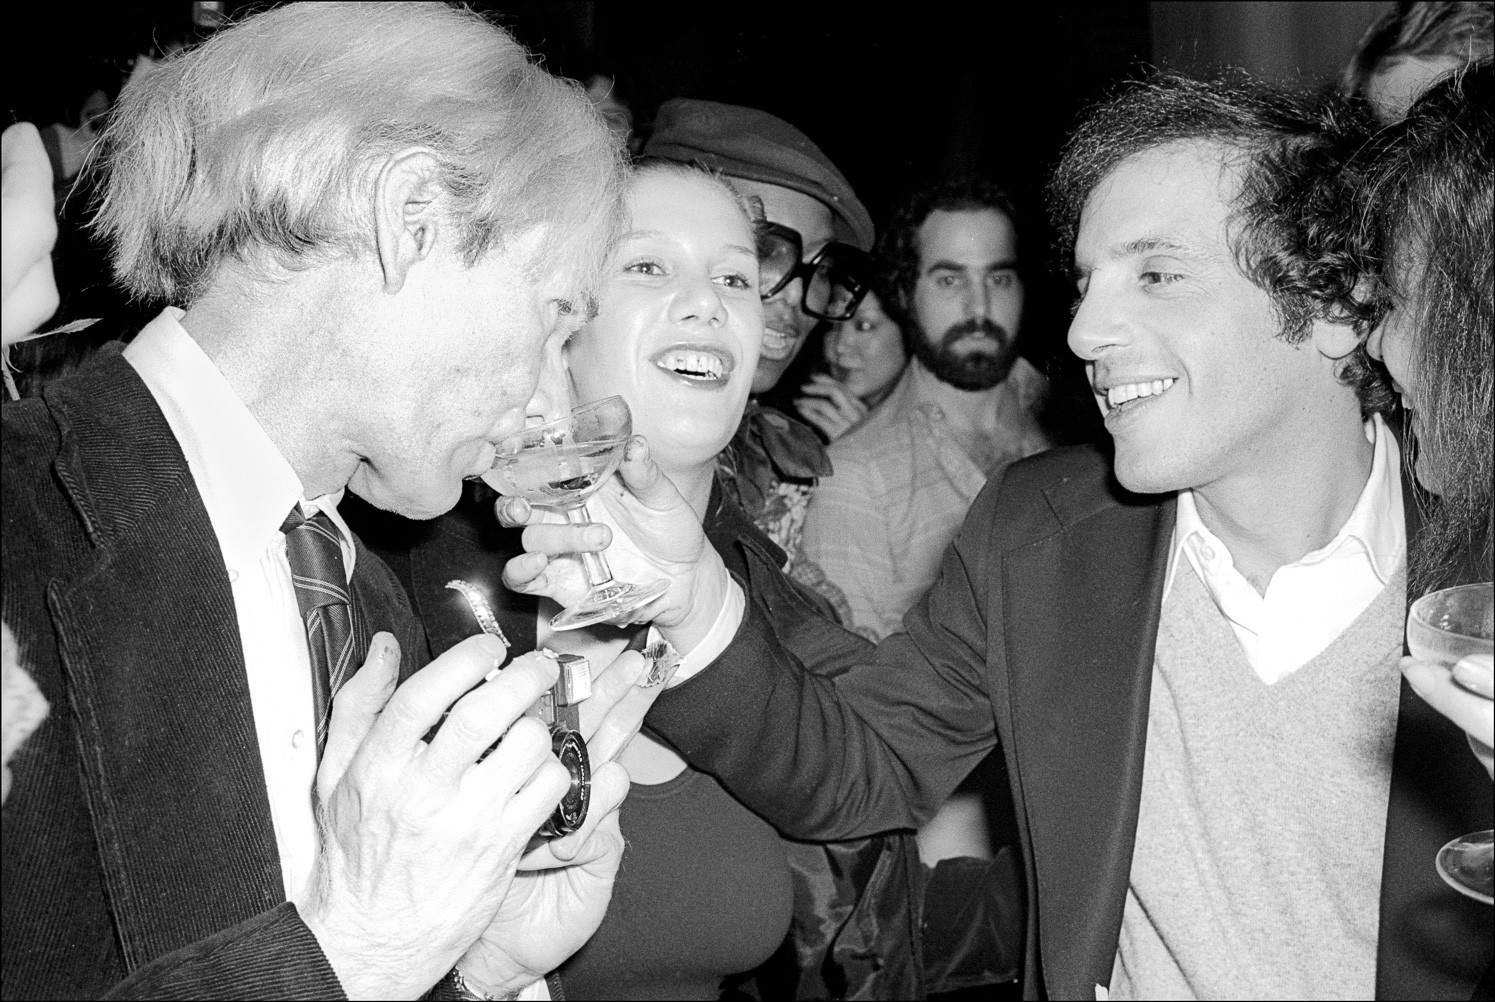 Стив Рубелл даёт Энди Уорхолу попробовать свой напиток в Студия 54, 1977 год. Фотограф Аллан Танненбаум